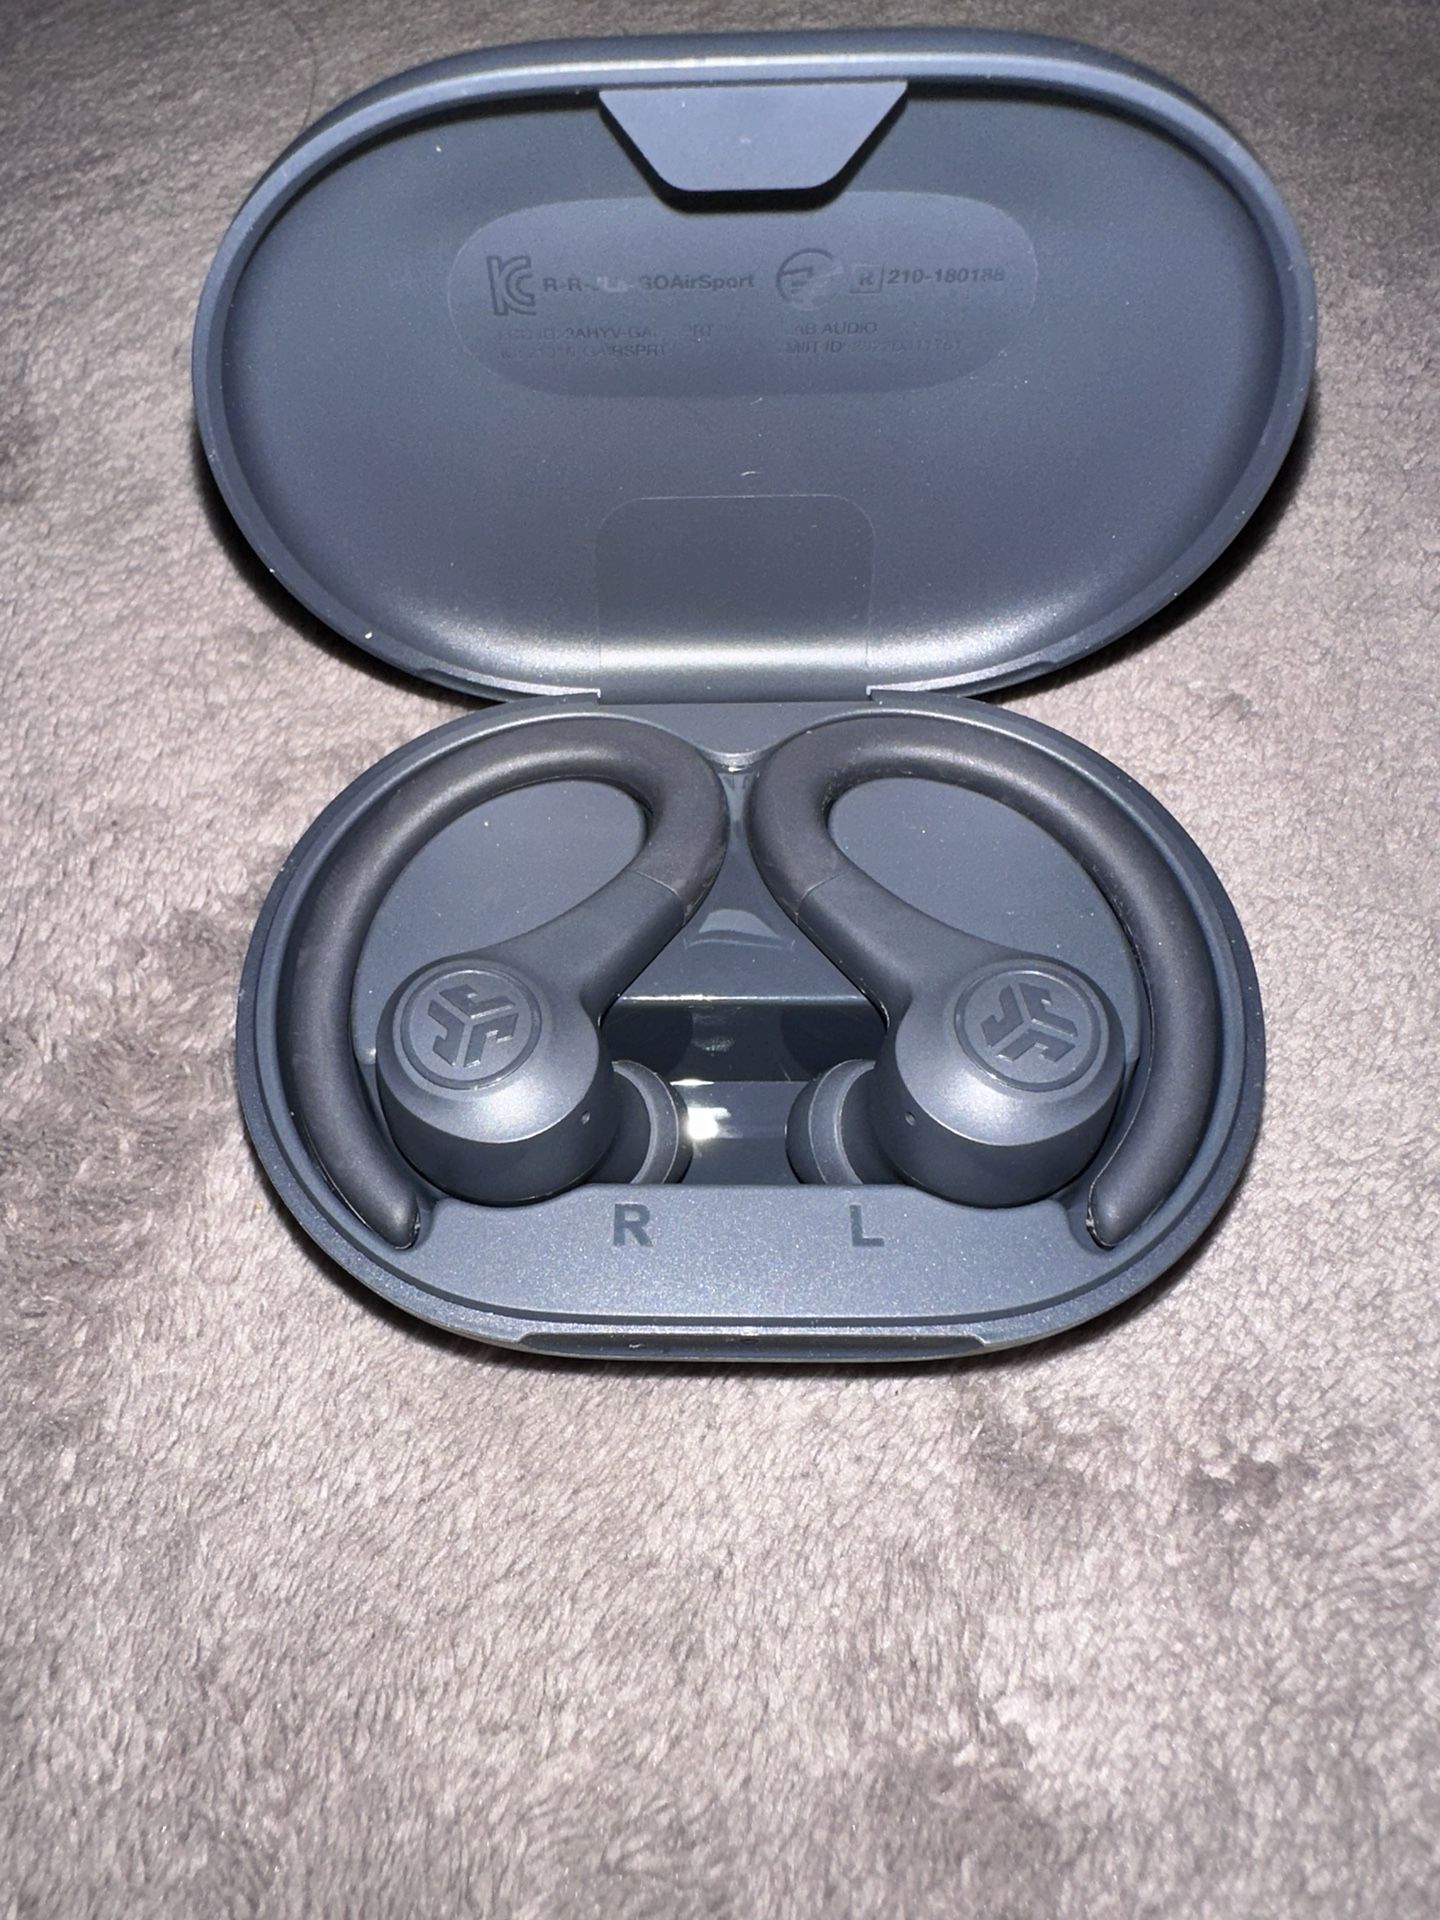 Jlab Wireless earbuds